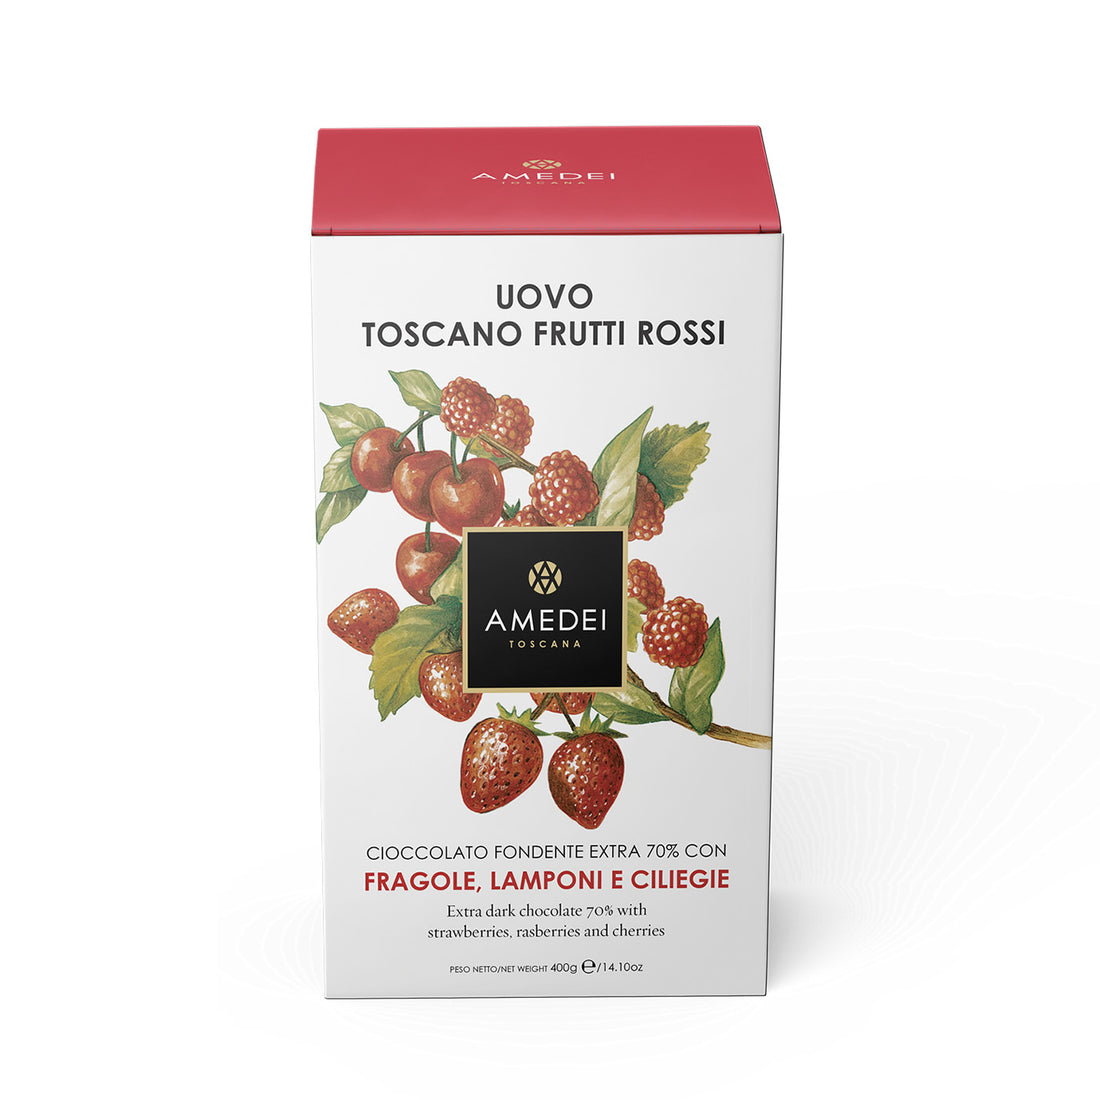 Uovo Toscano Frutti Rossi